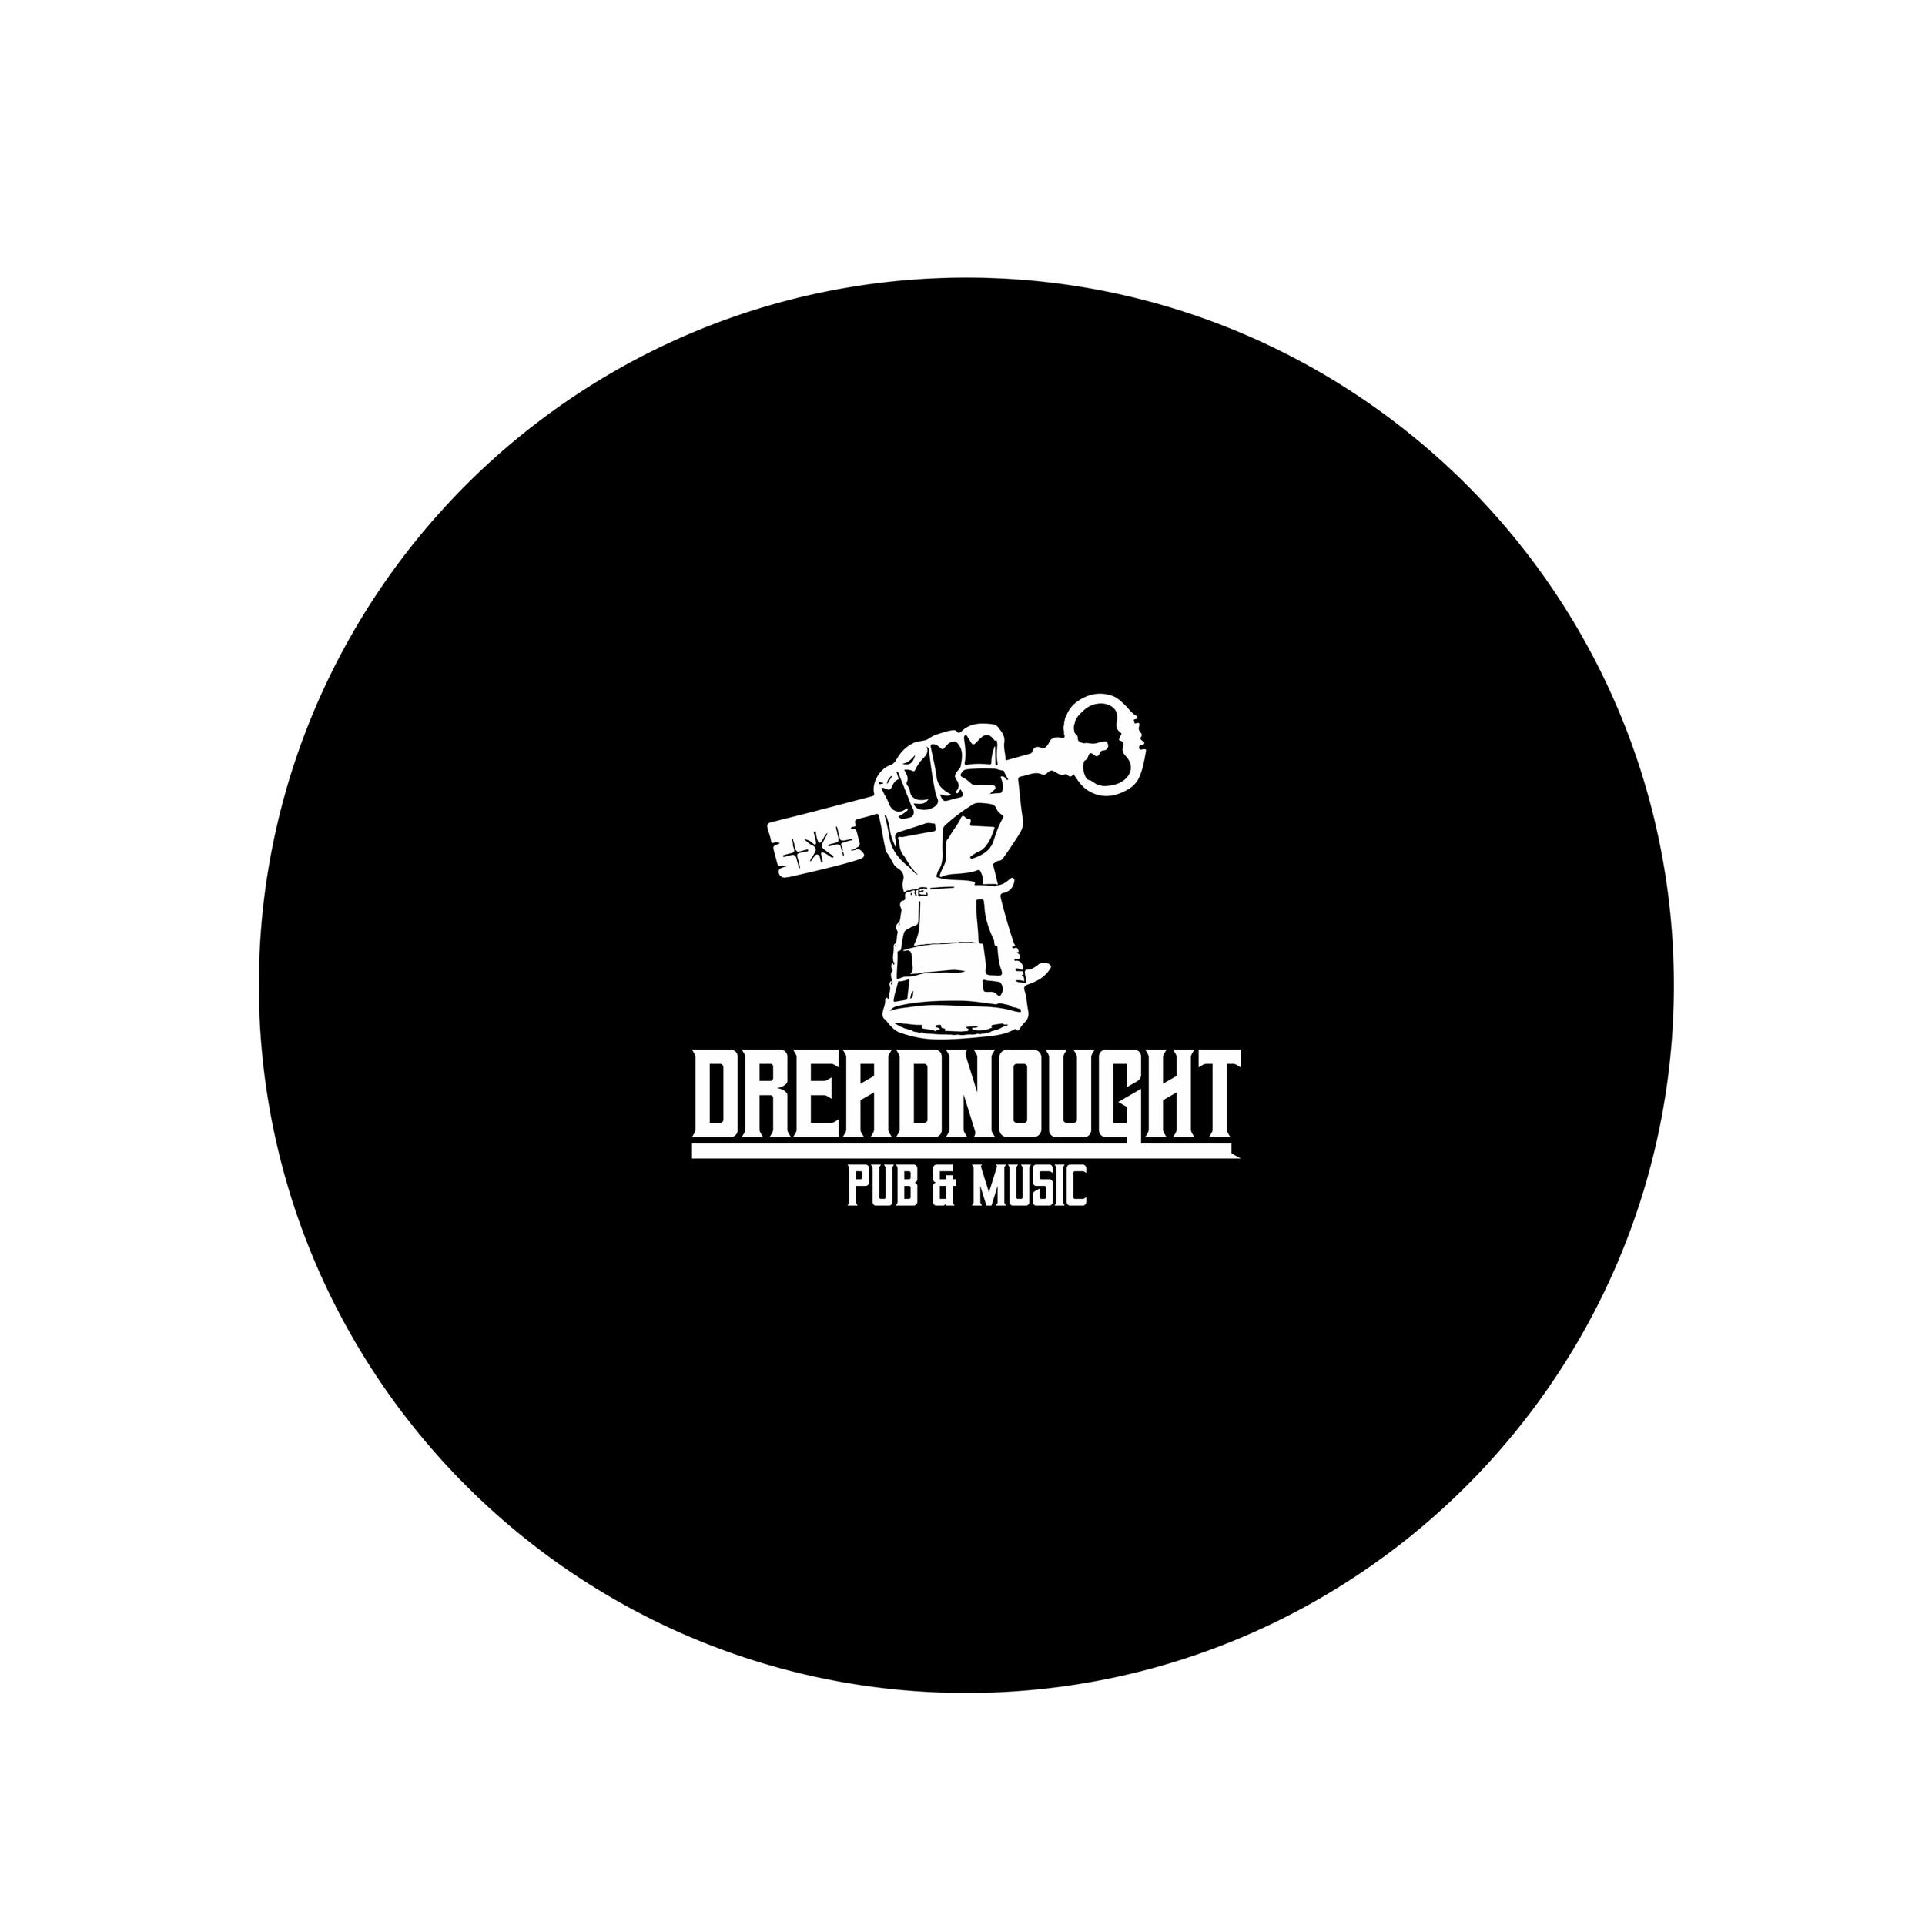 фото: логотип пивного ресторана Dreadnought